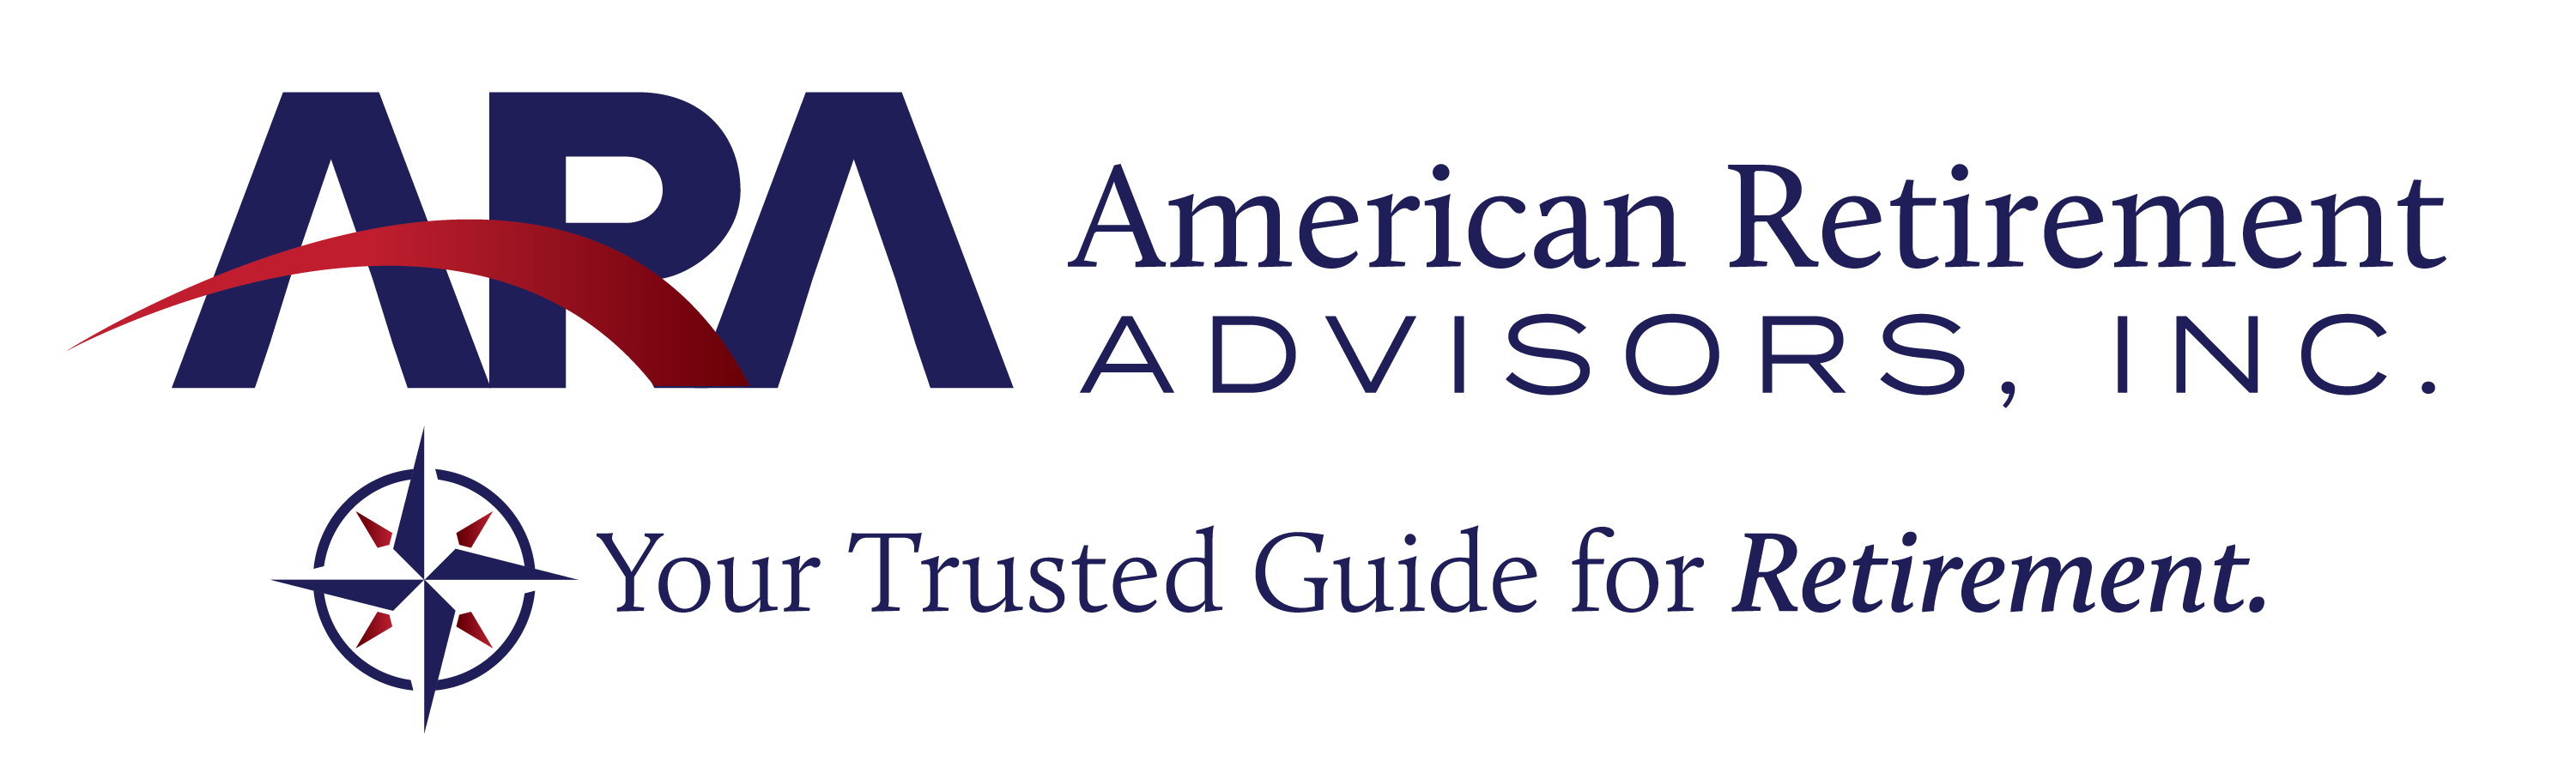 American Retirement Advisors, Inc.